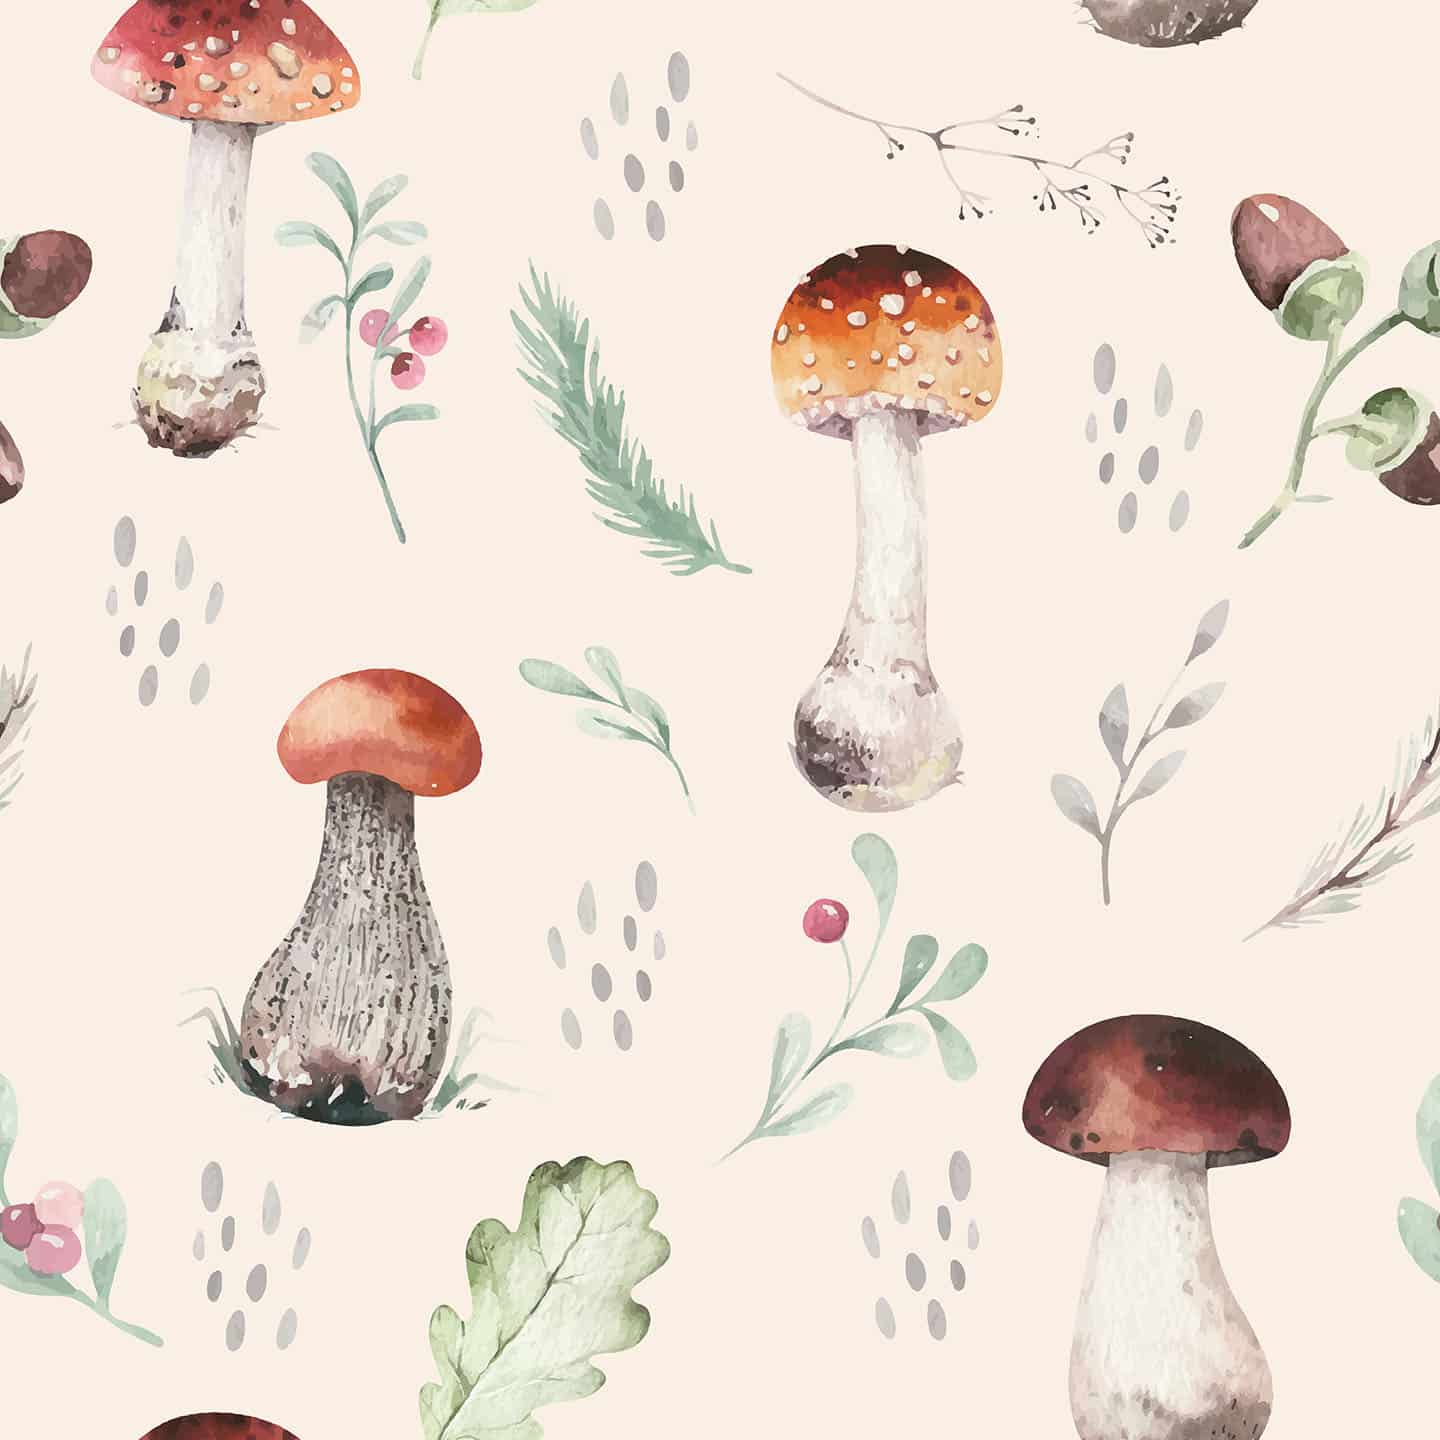 72 Mushroom HD Wallpapers  Download all  WidgetClub